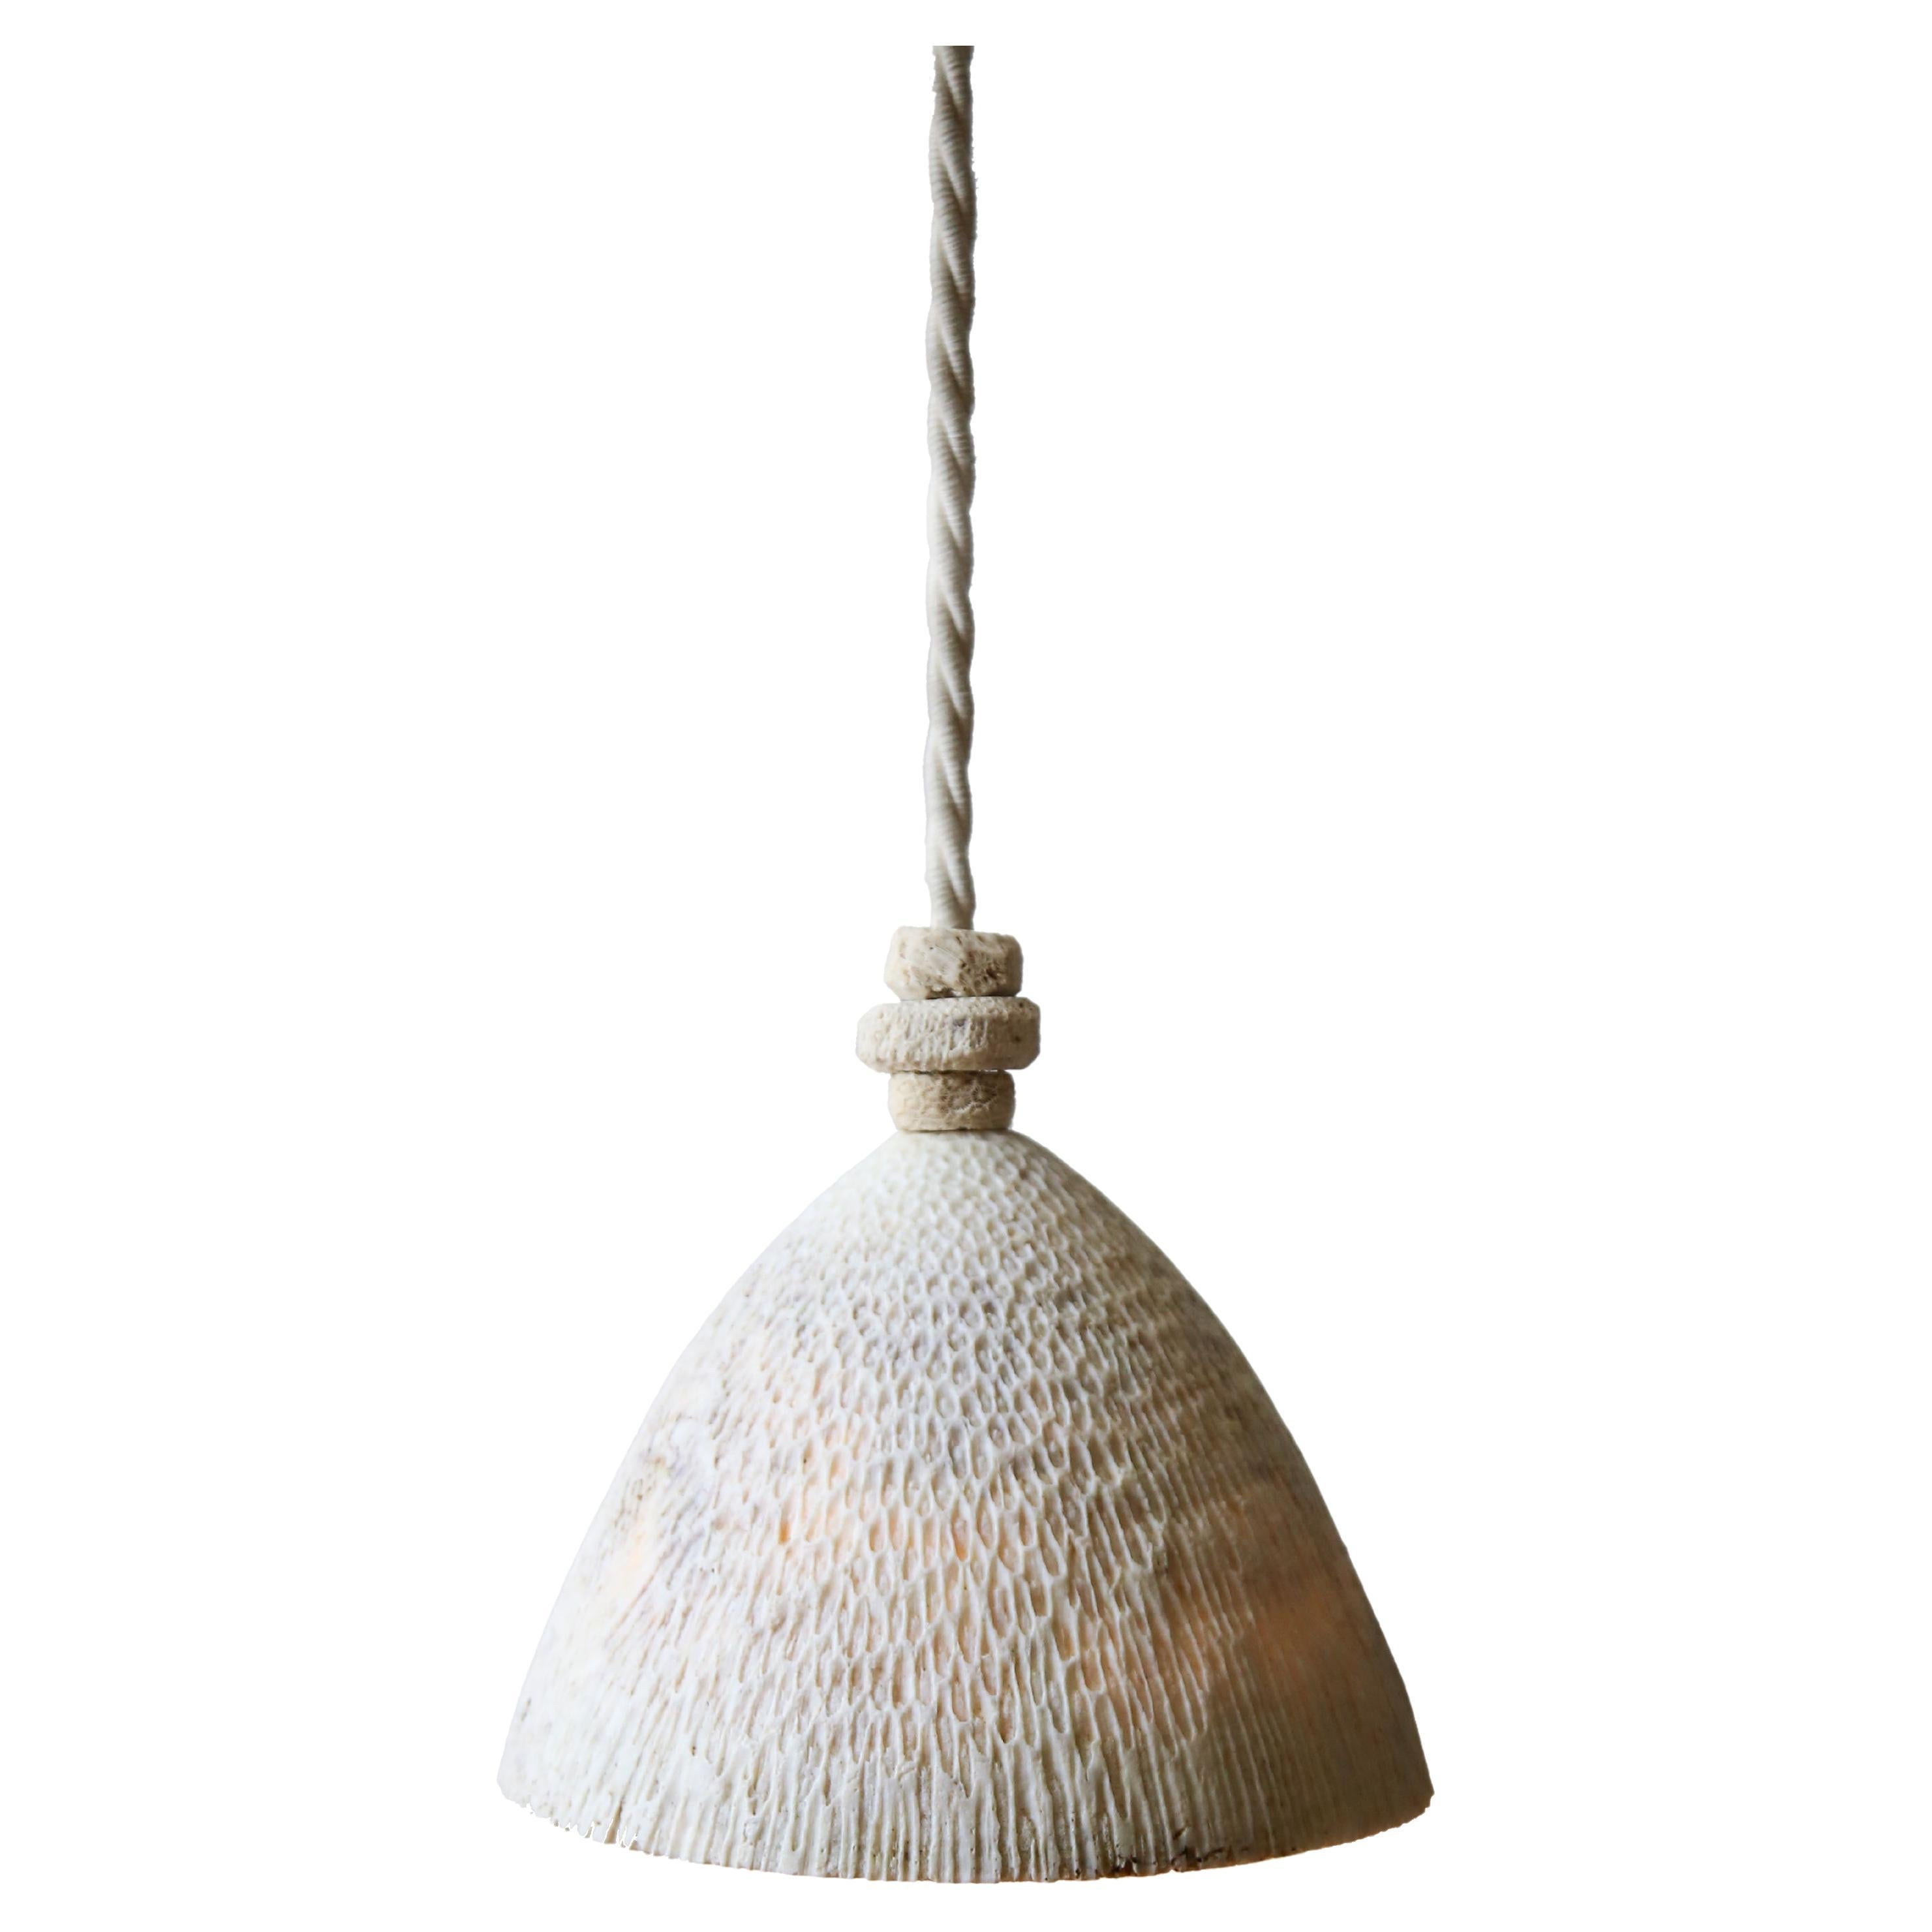 Die Fossil Coral Cone Hanging Pendelleuchte ist eine faszinierende Verschmelzung von Naturwundern und atemberaubender Handwerkskunst, die eine einzigartige ästhetische Wärme und einen ätherischen Glanz in Ihren Raum bringt. Diese kostbaren